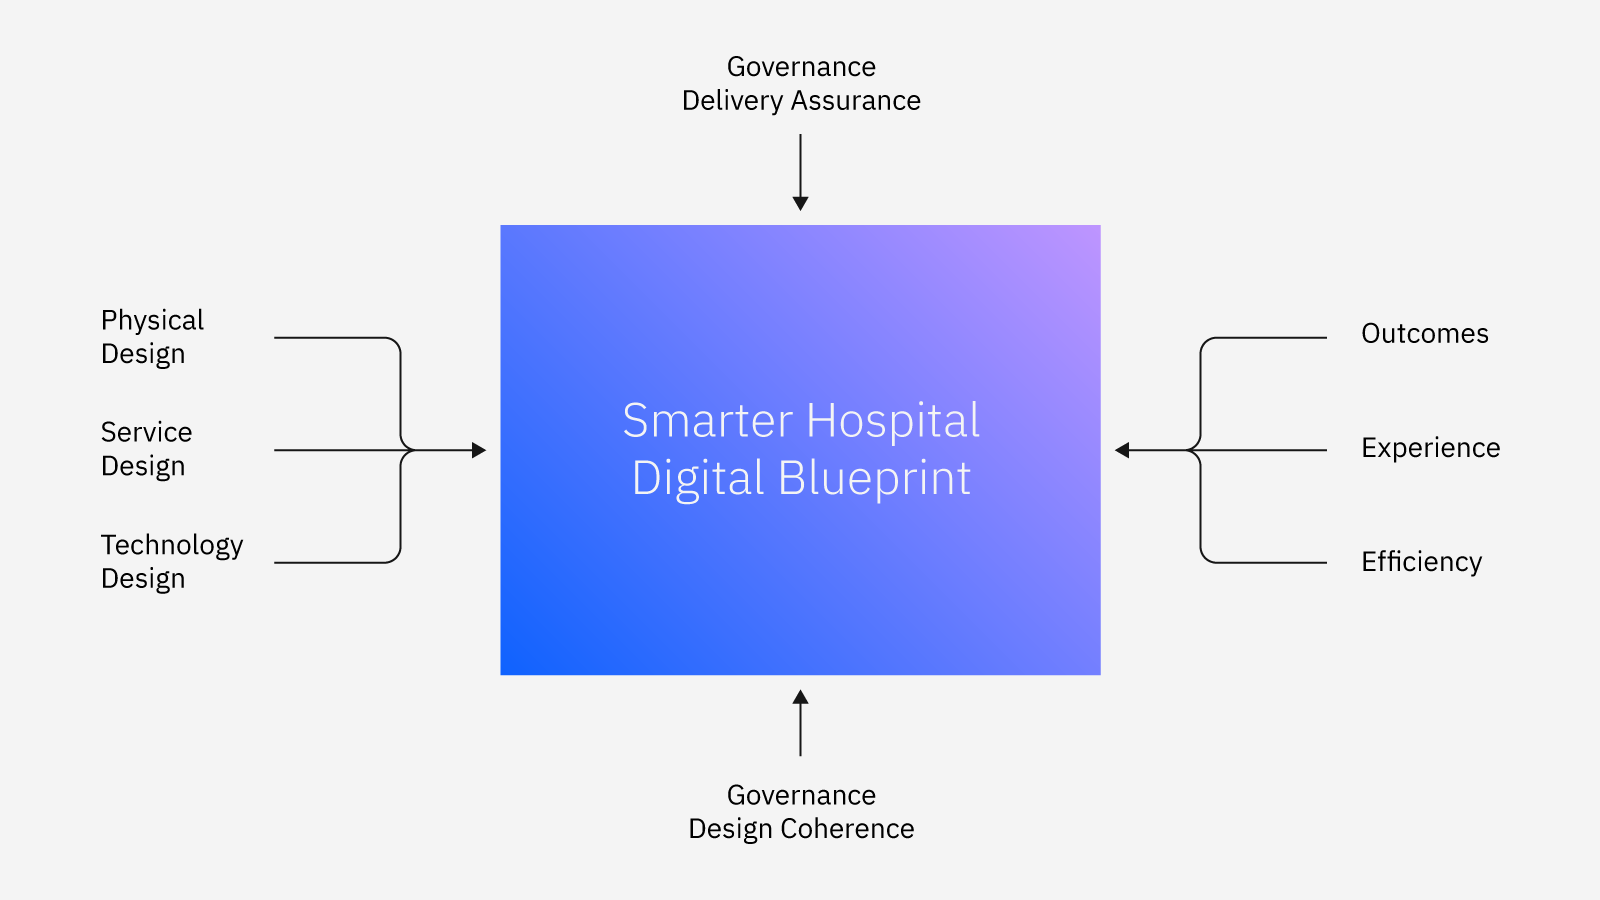 IBM’s vision for a Smarter Hospital